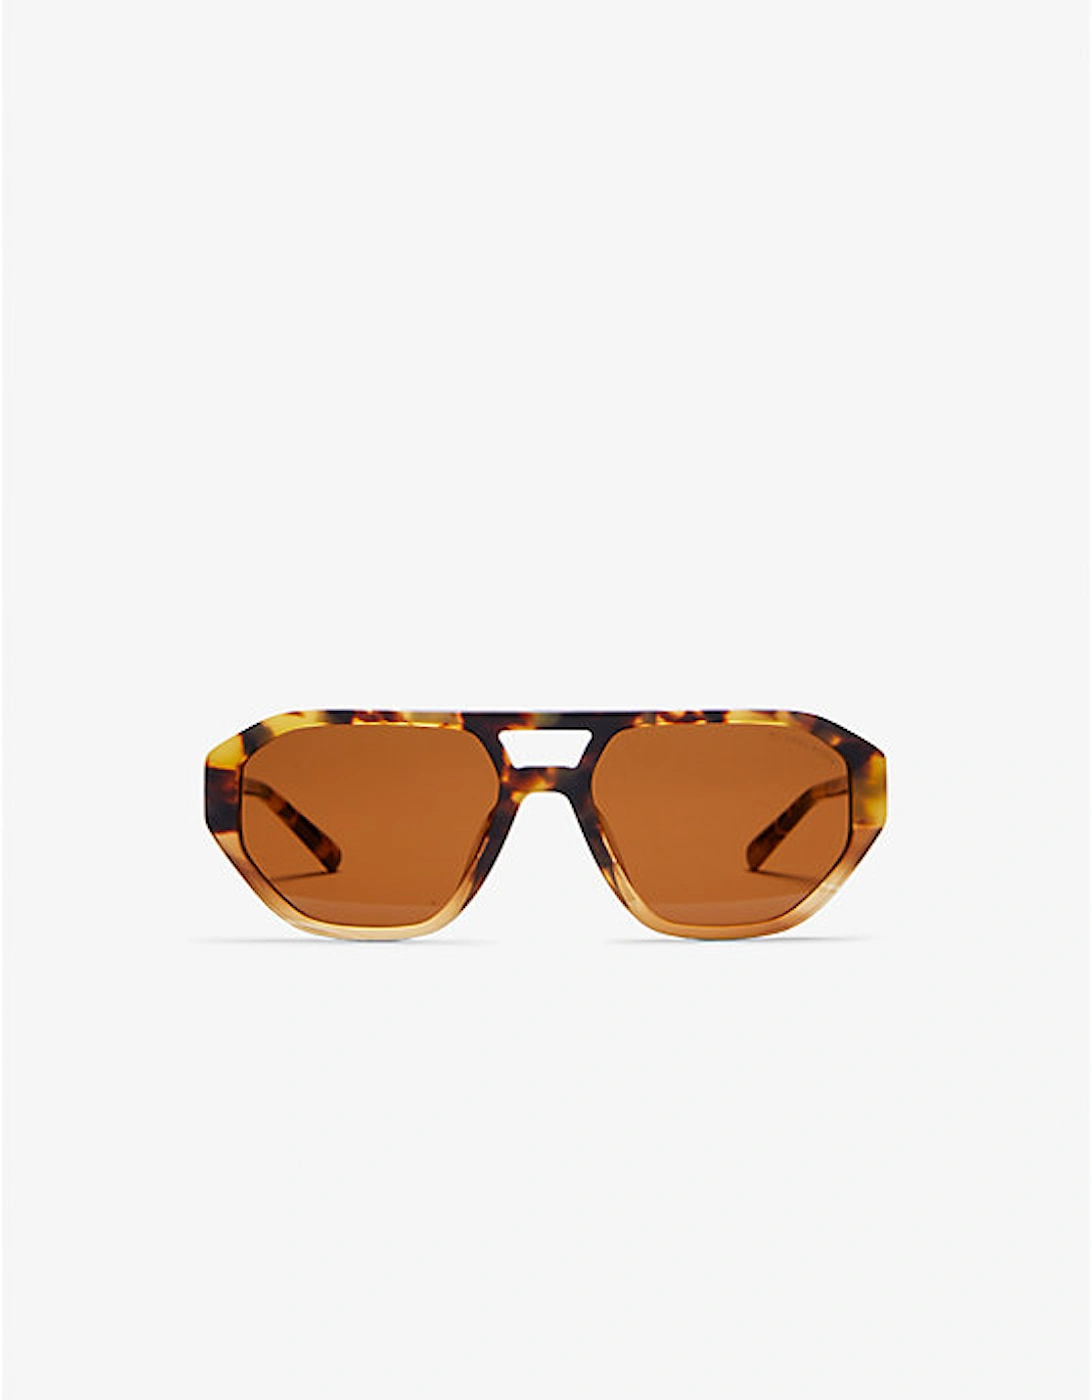 Zurich Sunglasses, 2 of 1